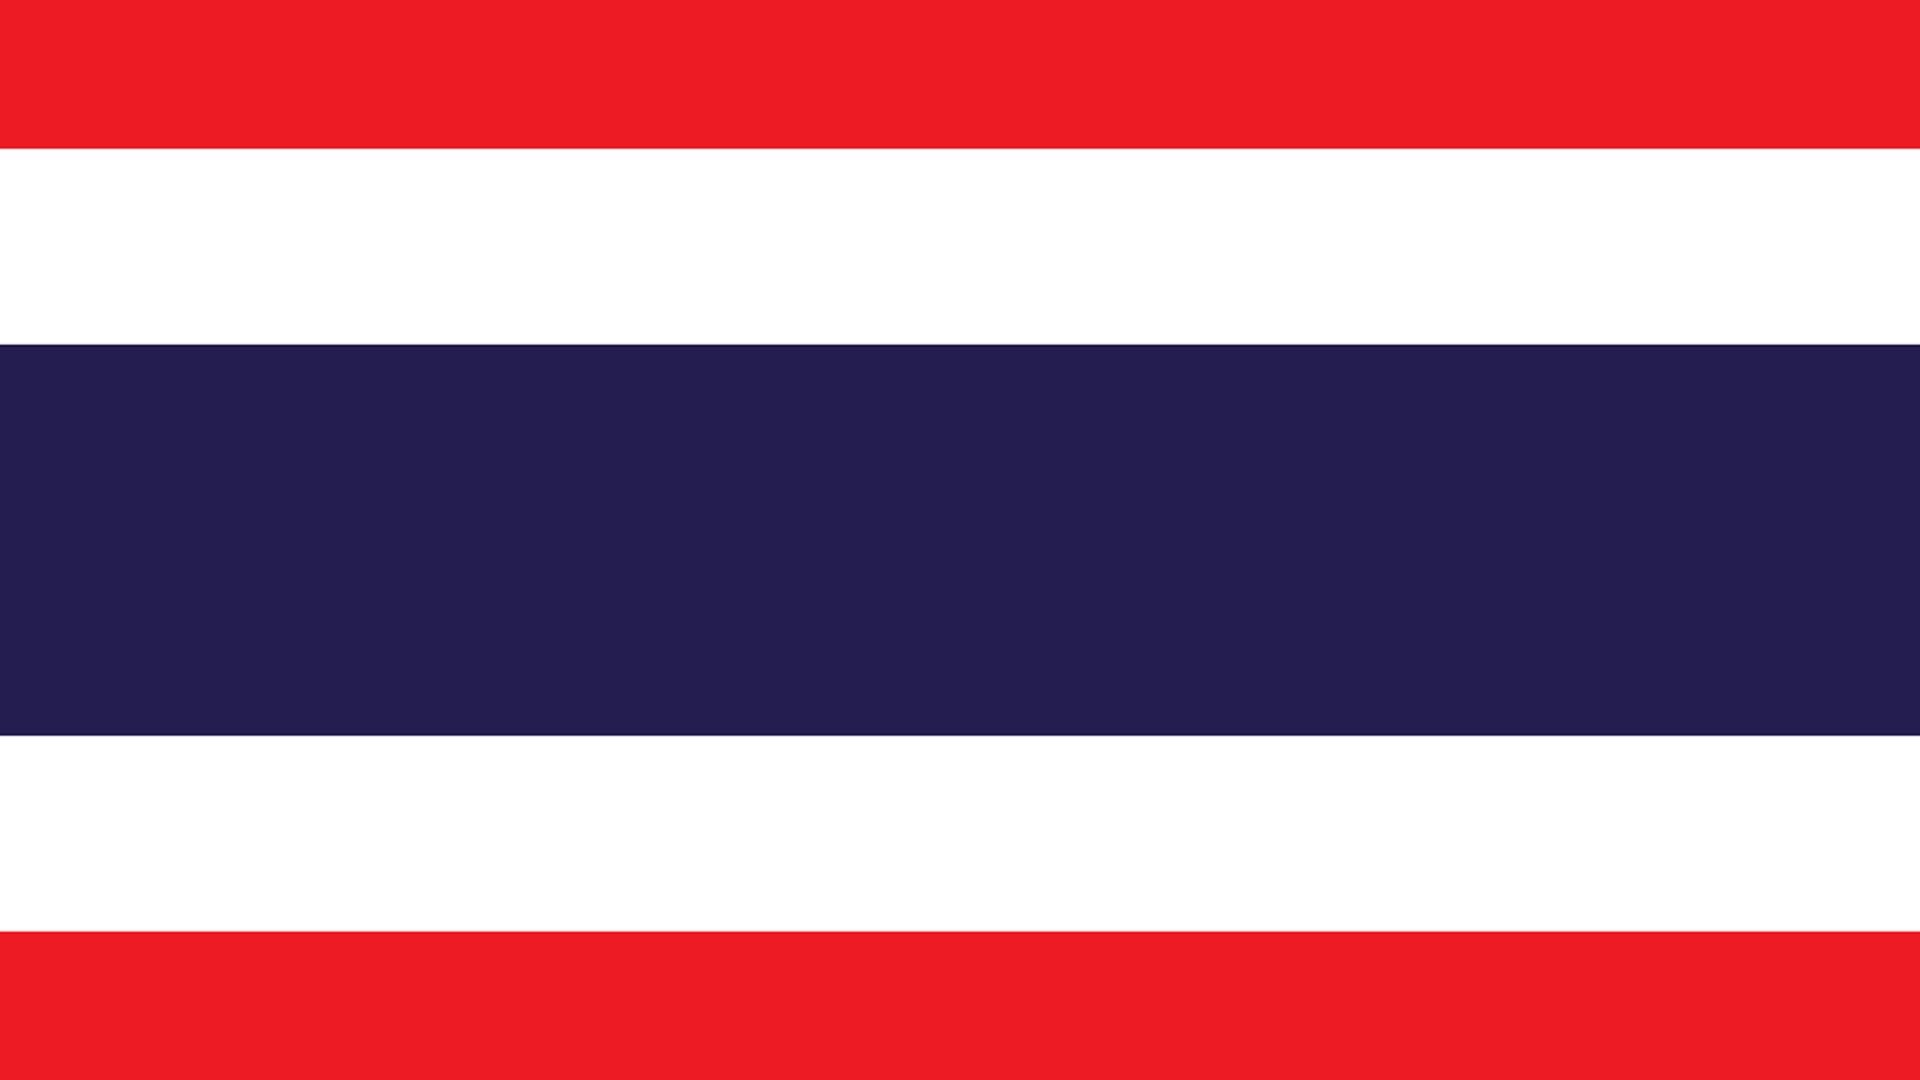 A bandeira da Tailândia tem como cor predominante o azul marinho localizado na faixa horizontal central da bandeira. Ao redor da faixa azul, há duas faixas brancas horizontais levemente acinzentadas duas vezes menor que a faixa central, ocupando um sexto da bandeira.